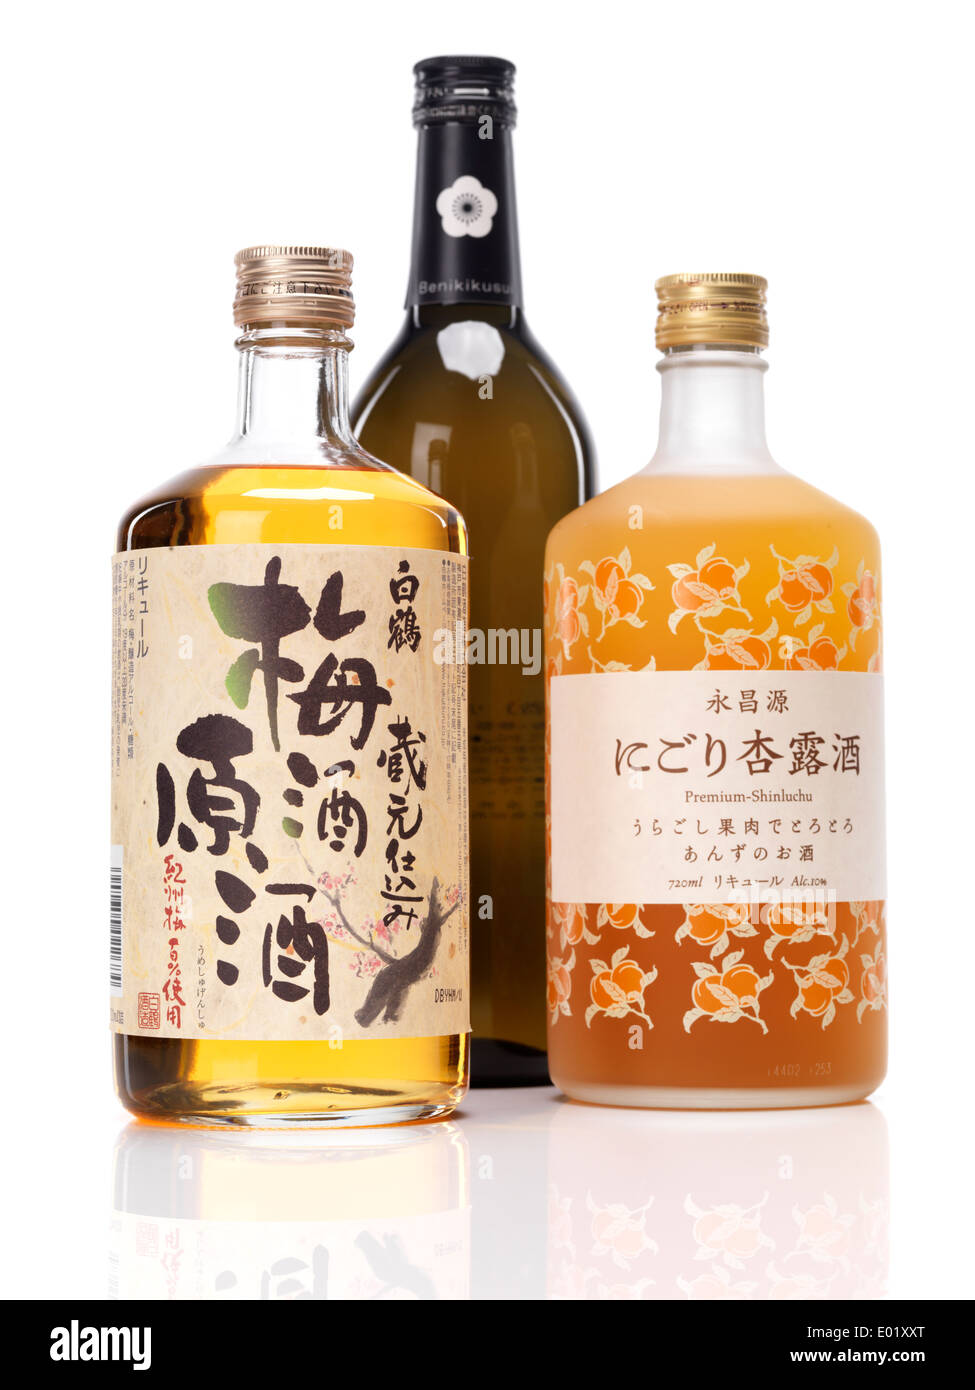 Dolce giapponese sake bottiglie, la gru bianca il vino di prugne umeshu,  benikikusui premium amor di prugne e premium-shinluchu liquore di  albicocche Foto stock - Alamy